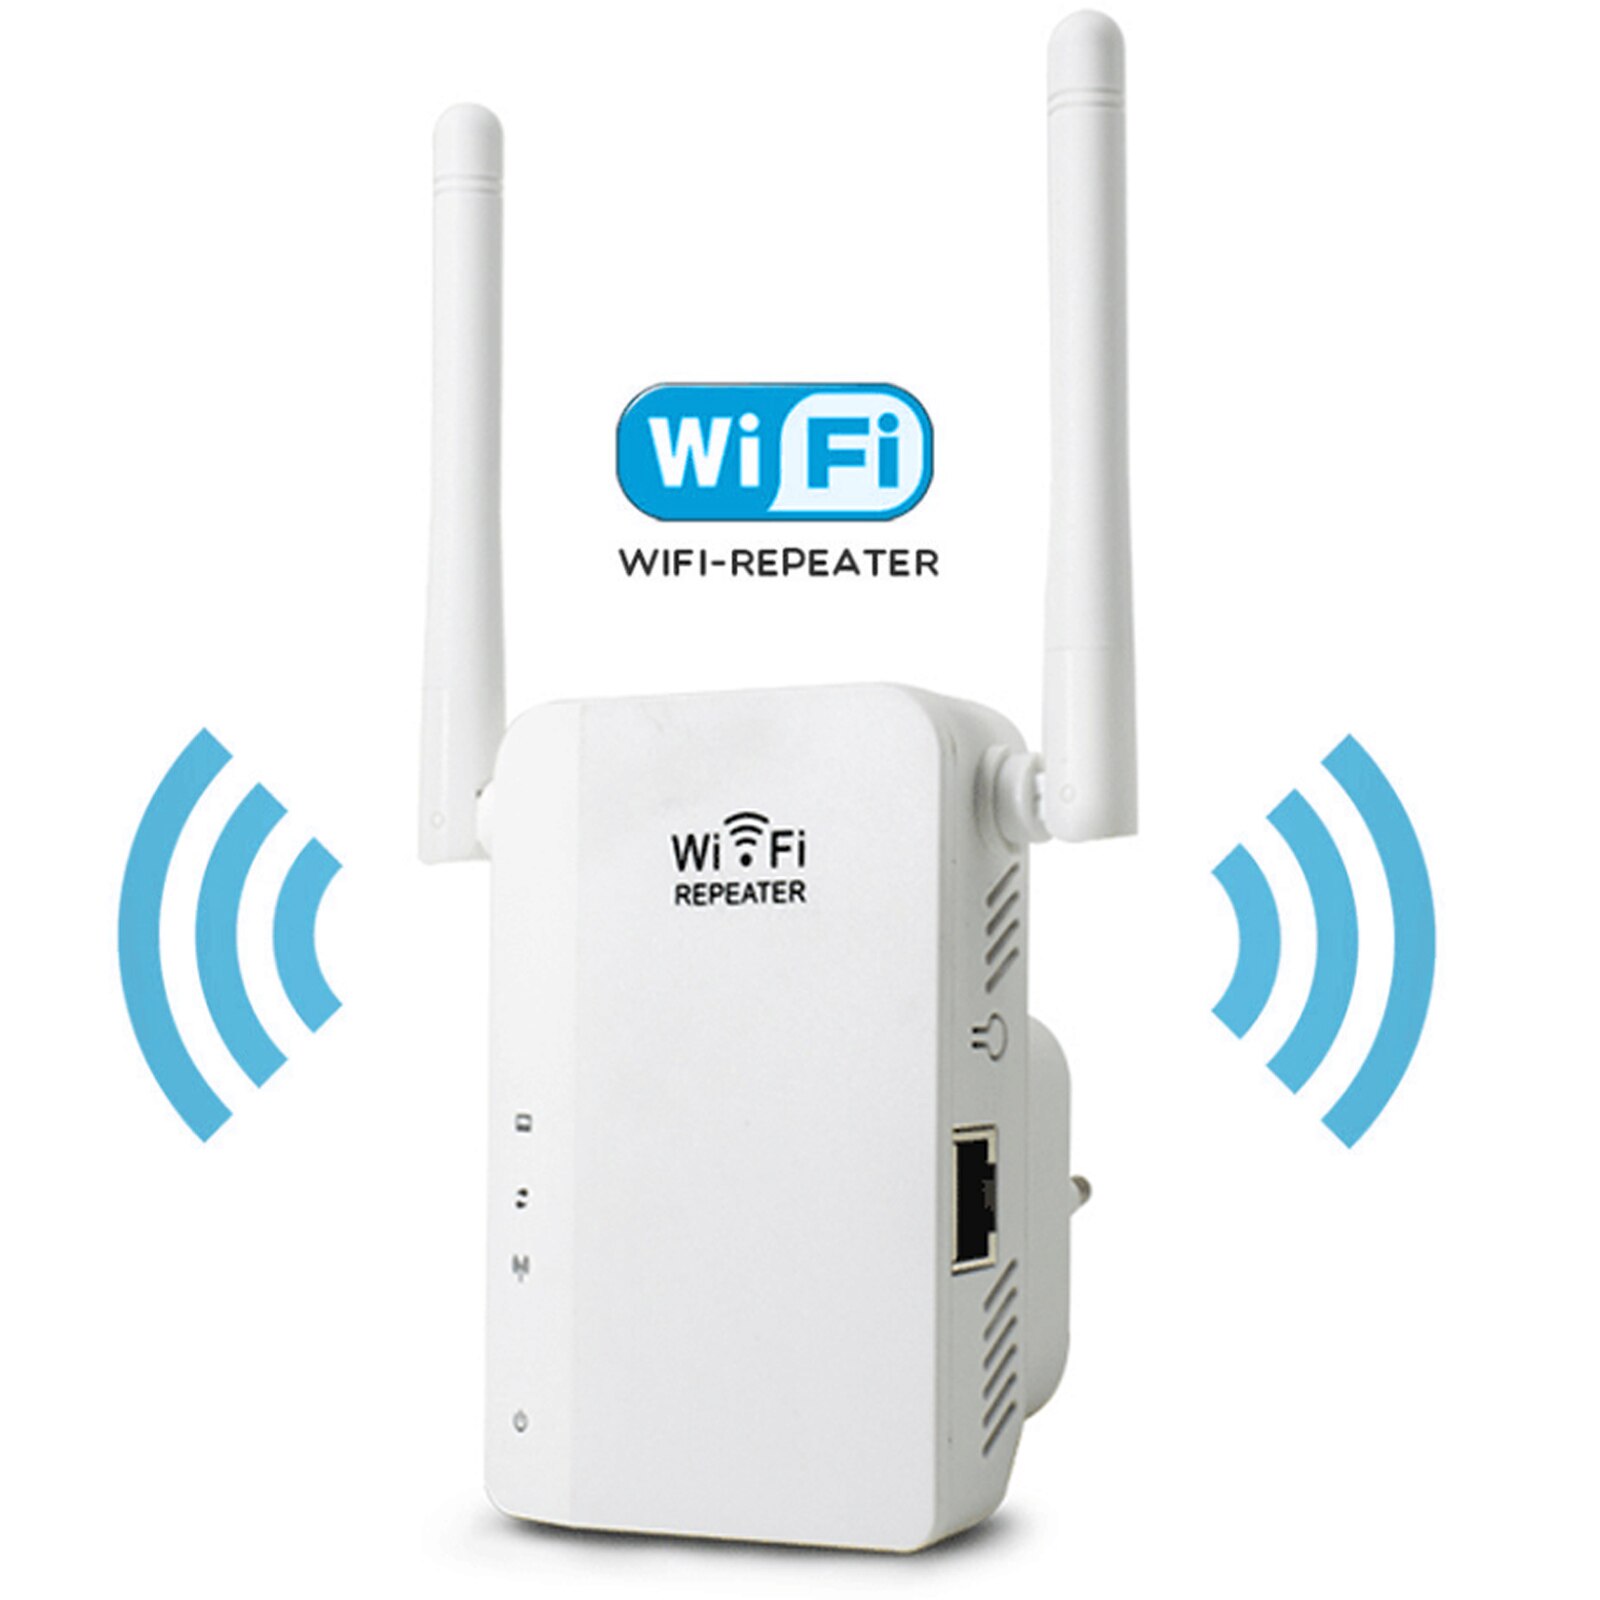 Répéteur WiFi Amplificateur Signal WiFi 300Mbps 2.4GHz